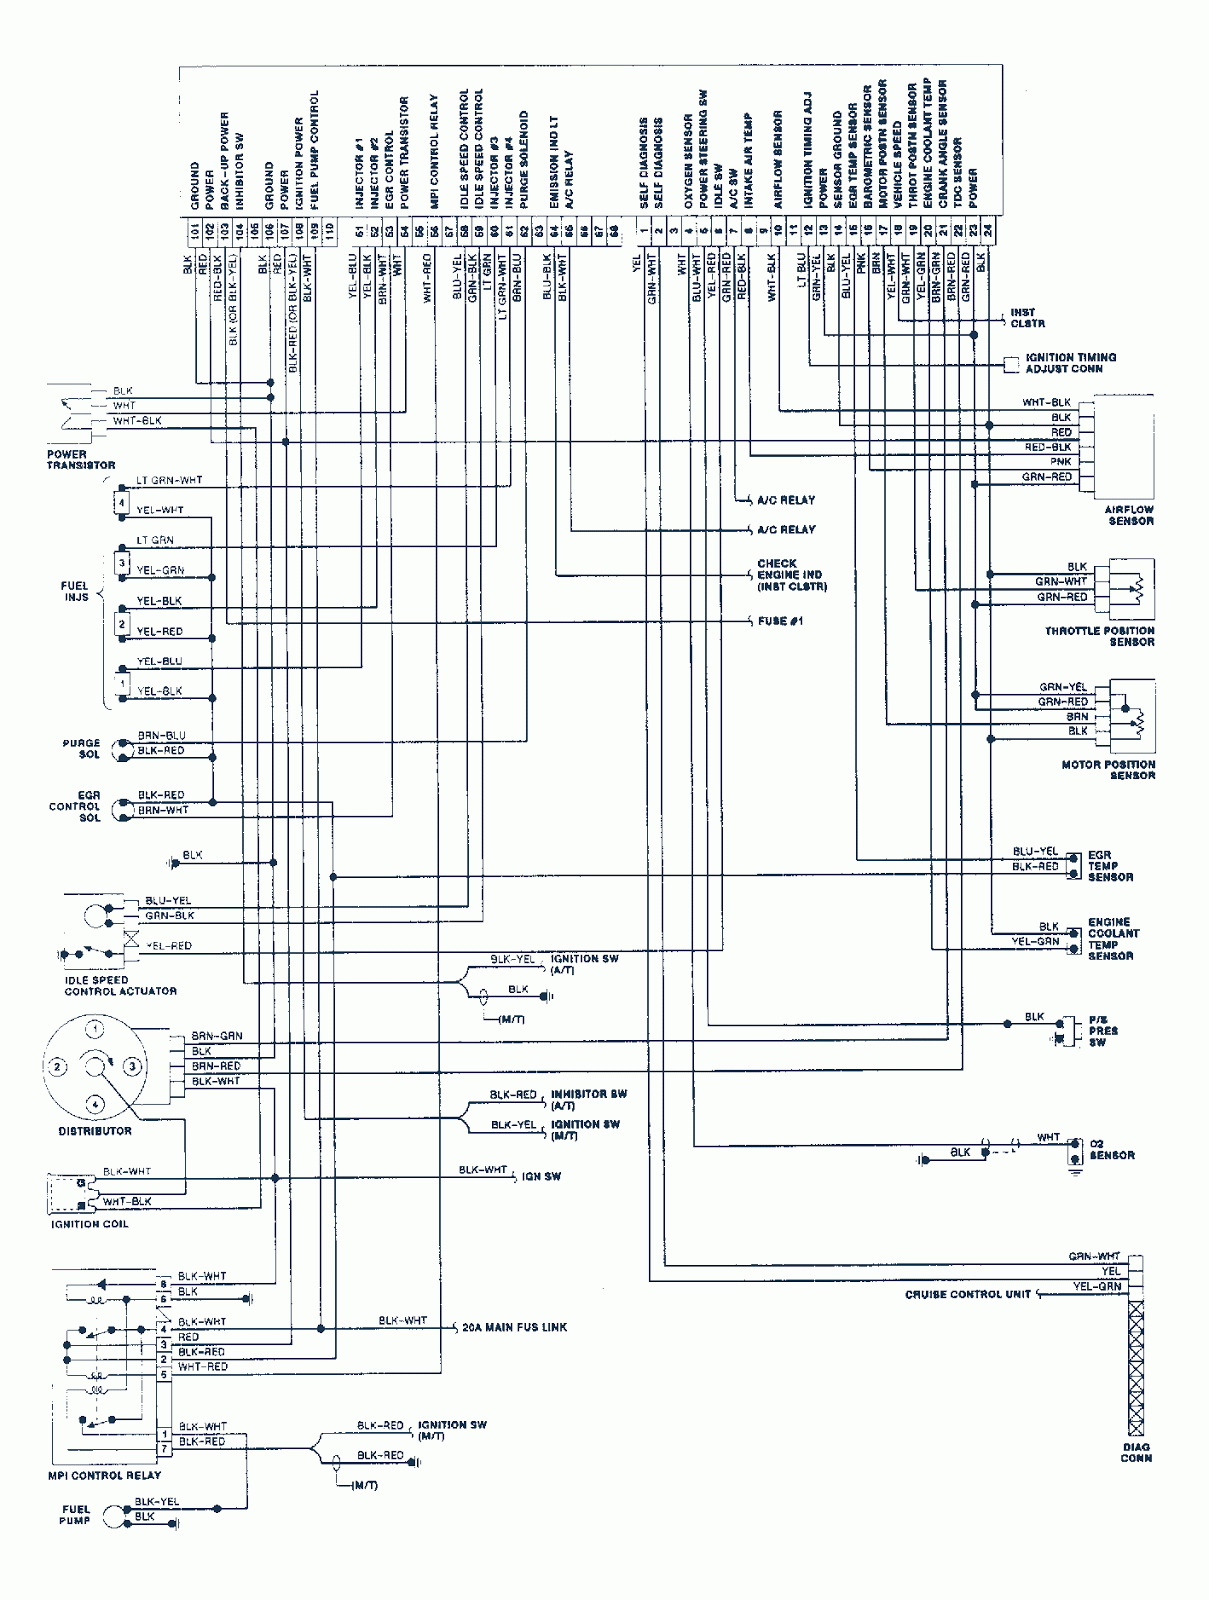 1990 Dodge Colt Vista Wiring Diagram | Wiring And Schematic 1990 dodge spirit wiring diagram 